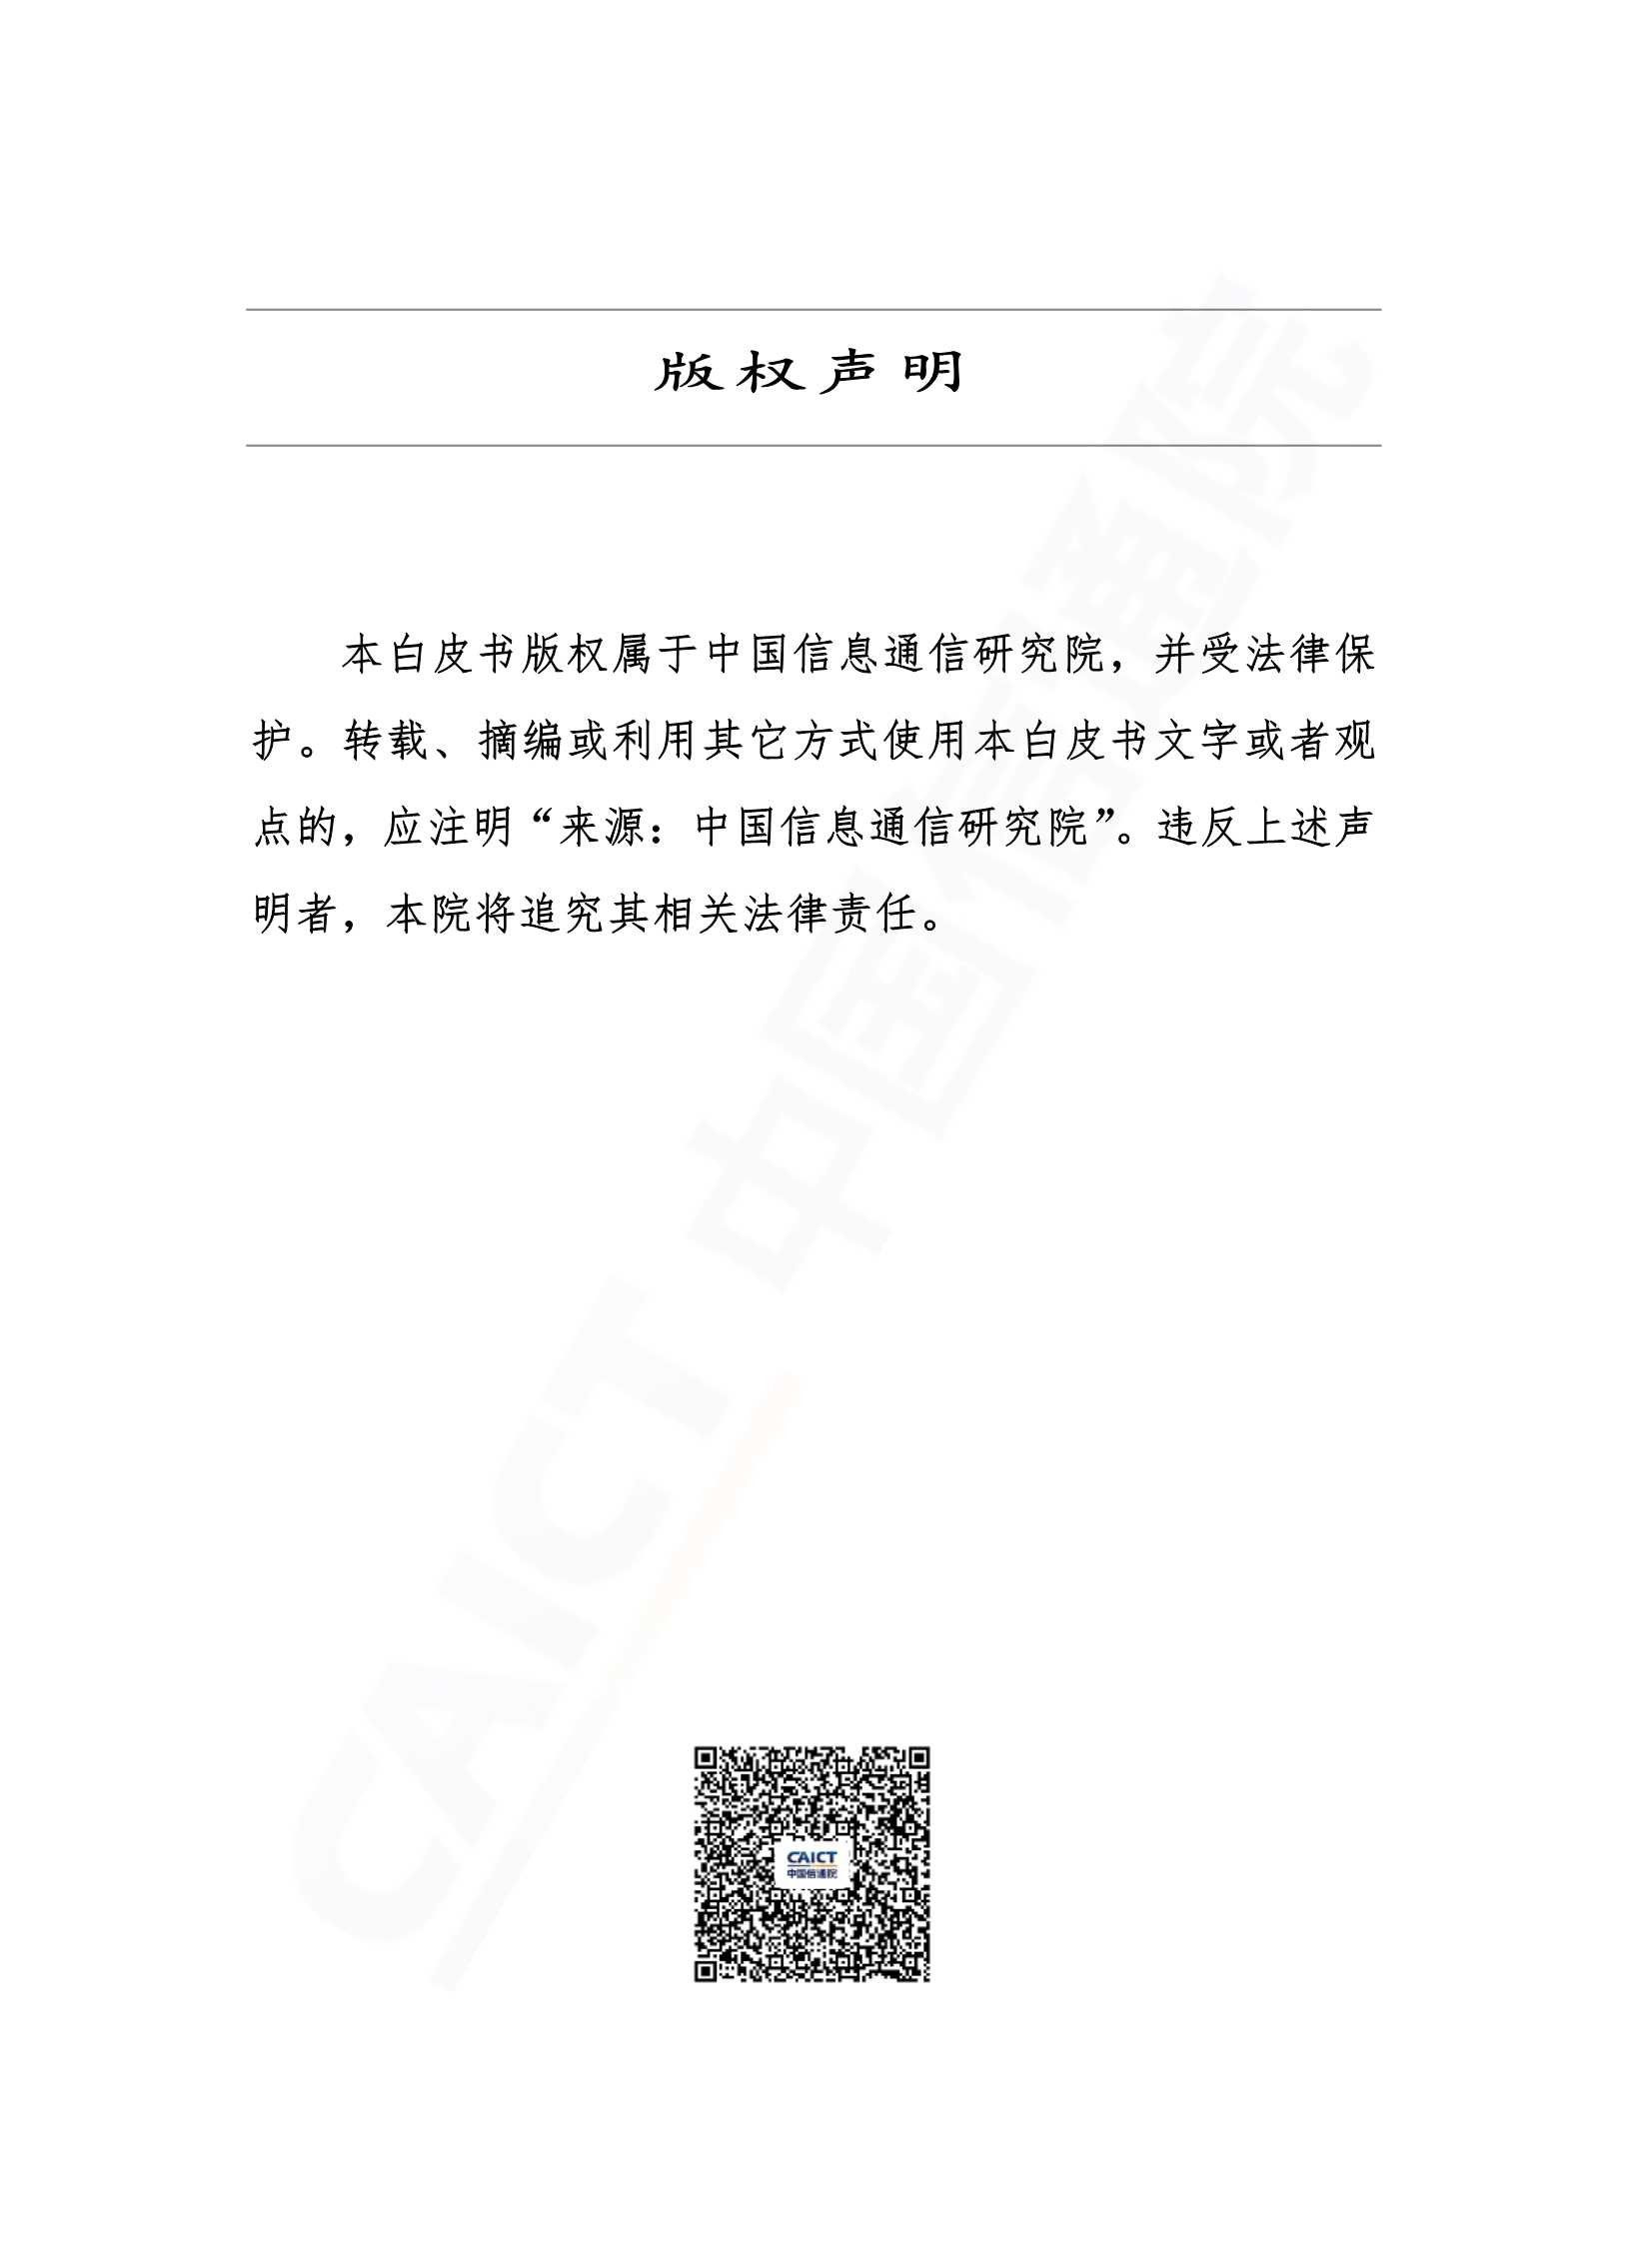 信通院-中国网络安全产业白皮书-2022.01-53页